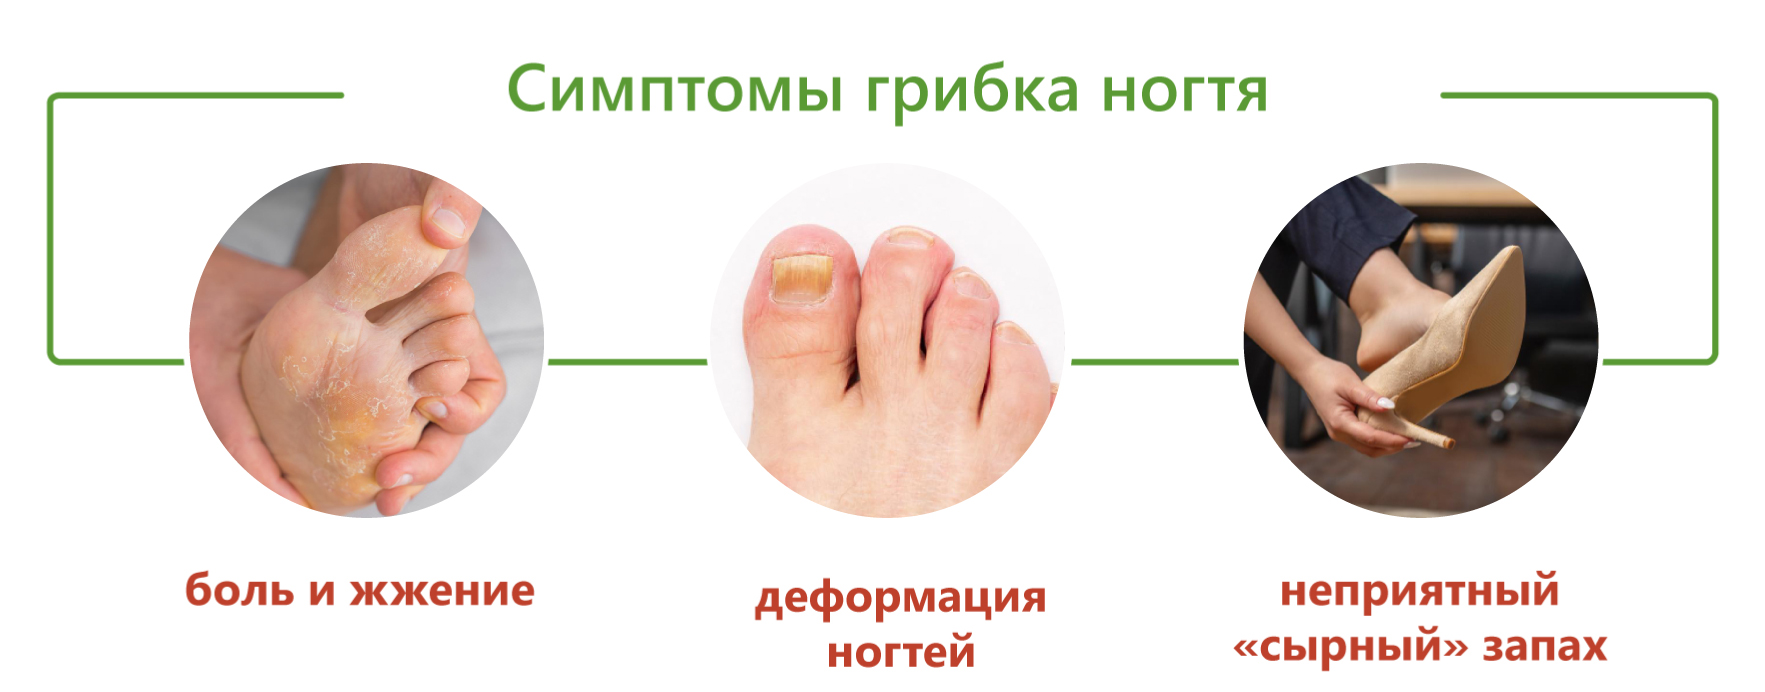 Симптомы грибка ног